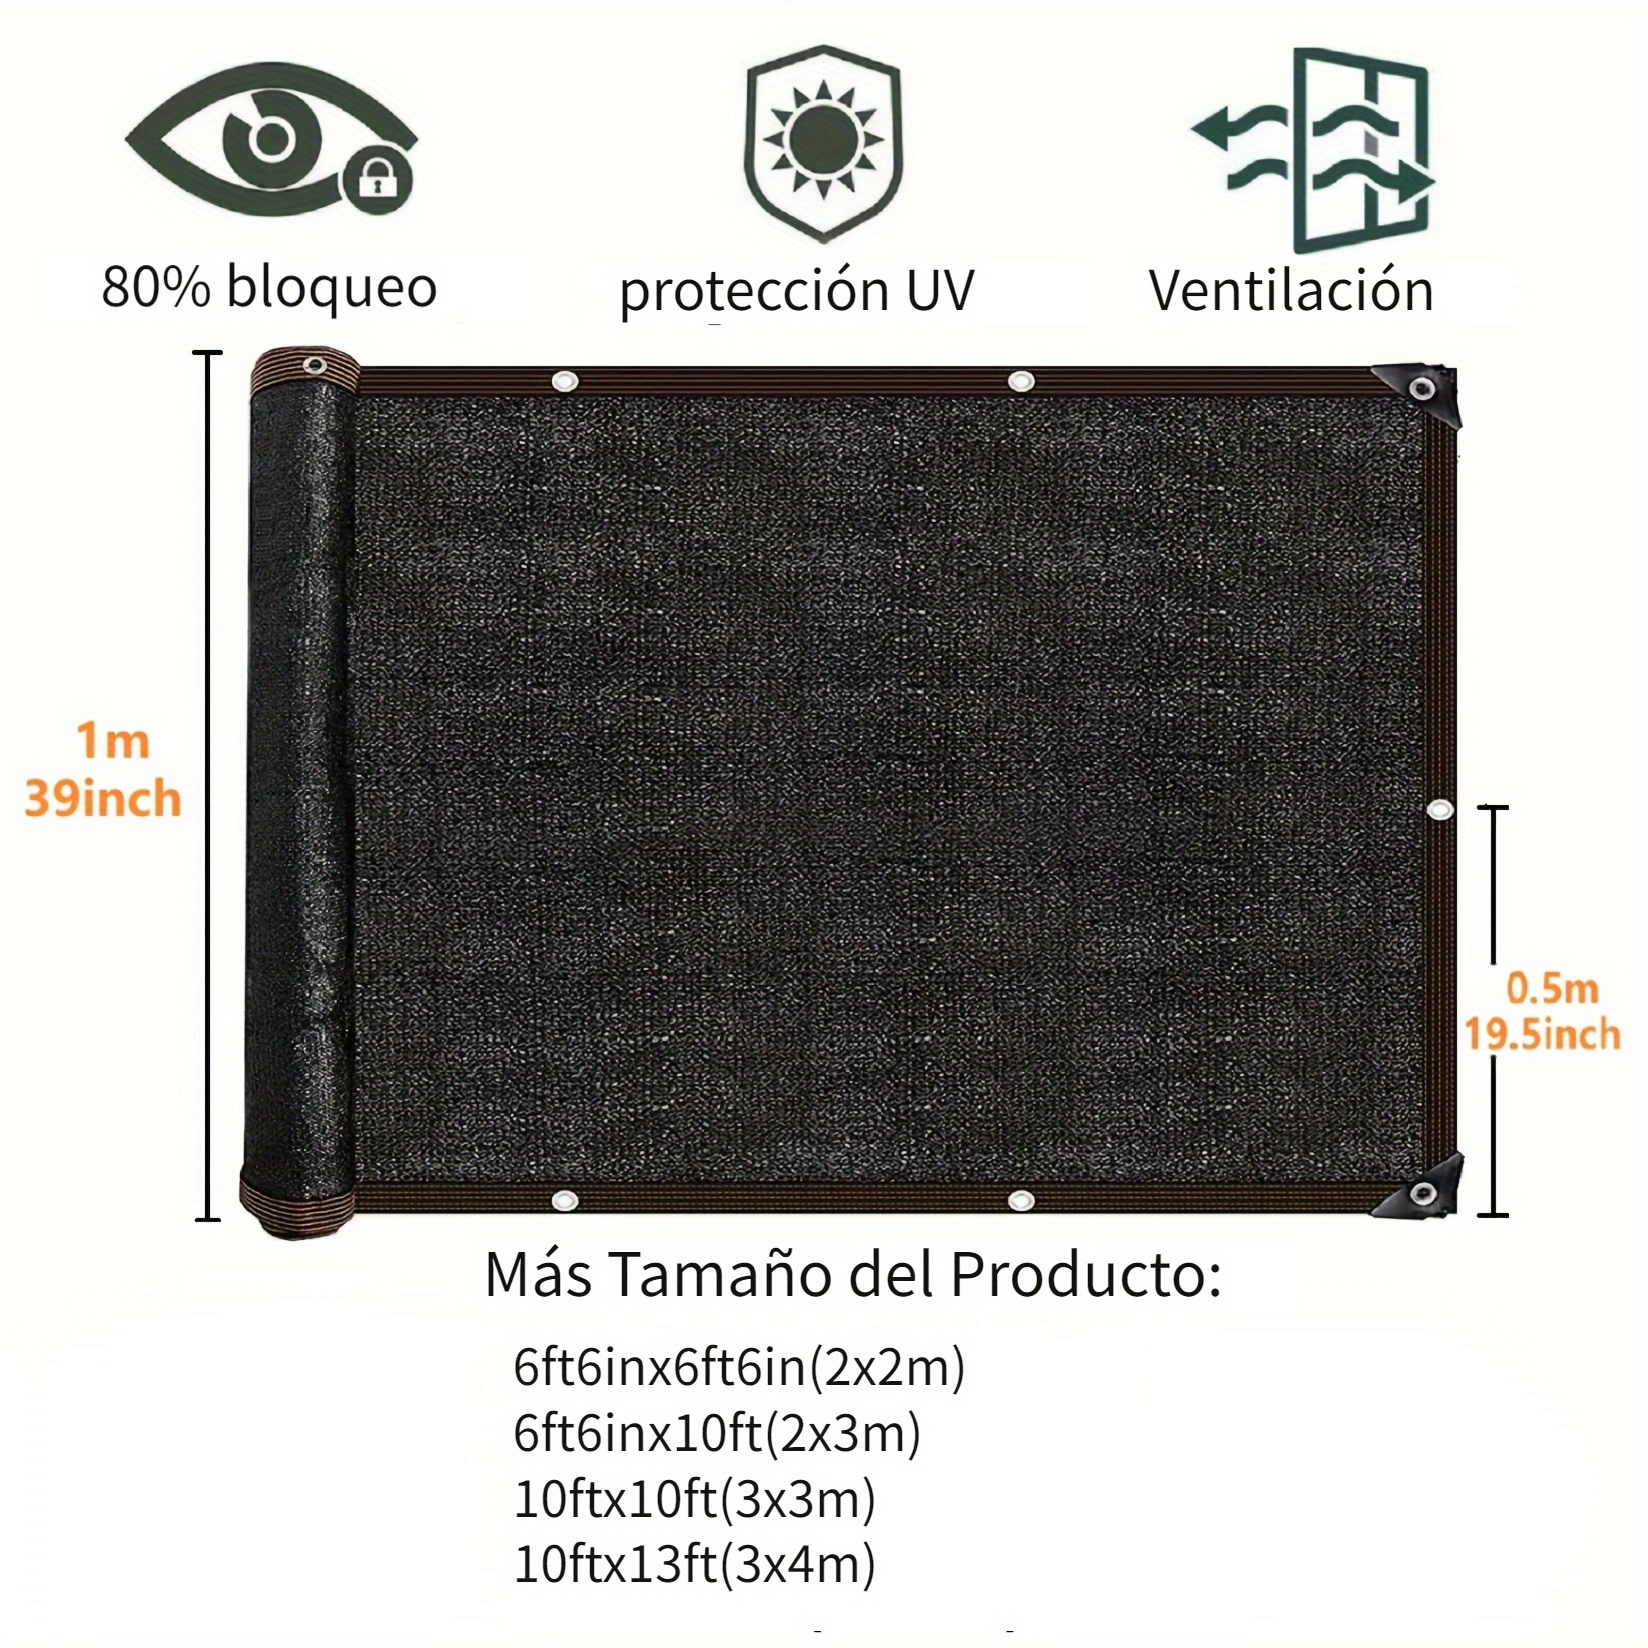 10ftx13ft Toldo rectangular de tela con bloque UV para vela de sombra solar